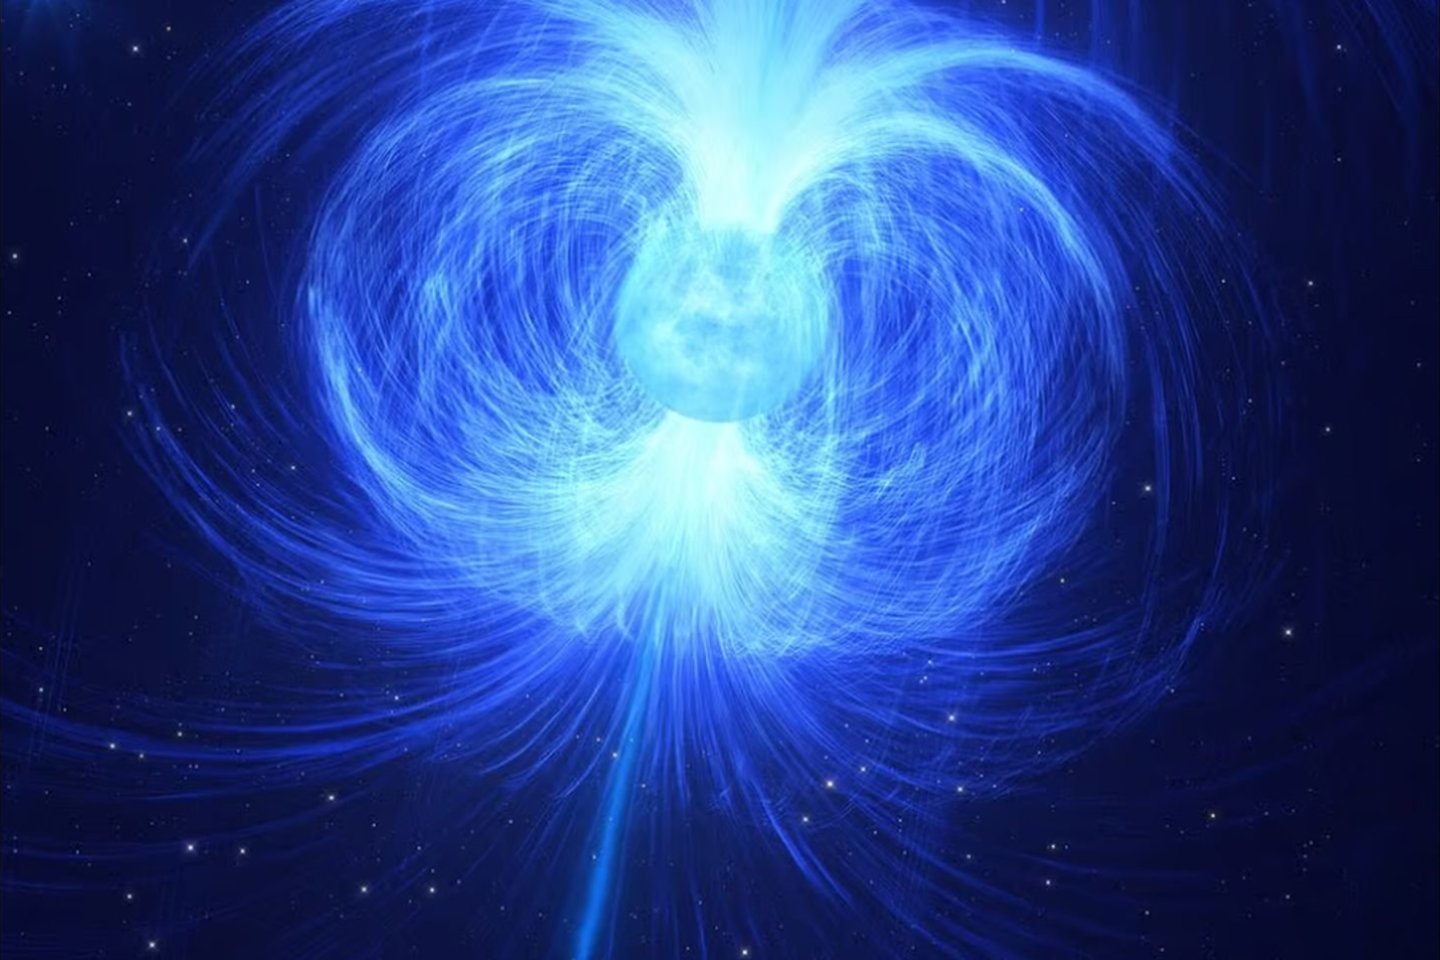 Dailininko sukurta naujo tipo astronominio objekto – masyvios magnetinės helio žvaigždės – iliustracija.<br>ESO / L.Calcada iliustr.